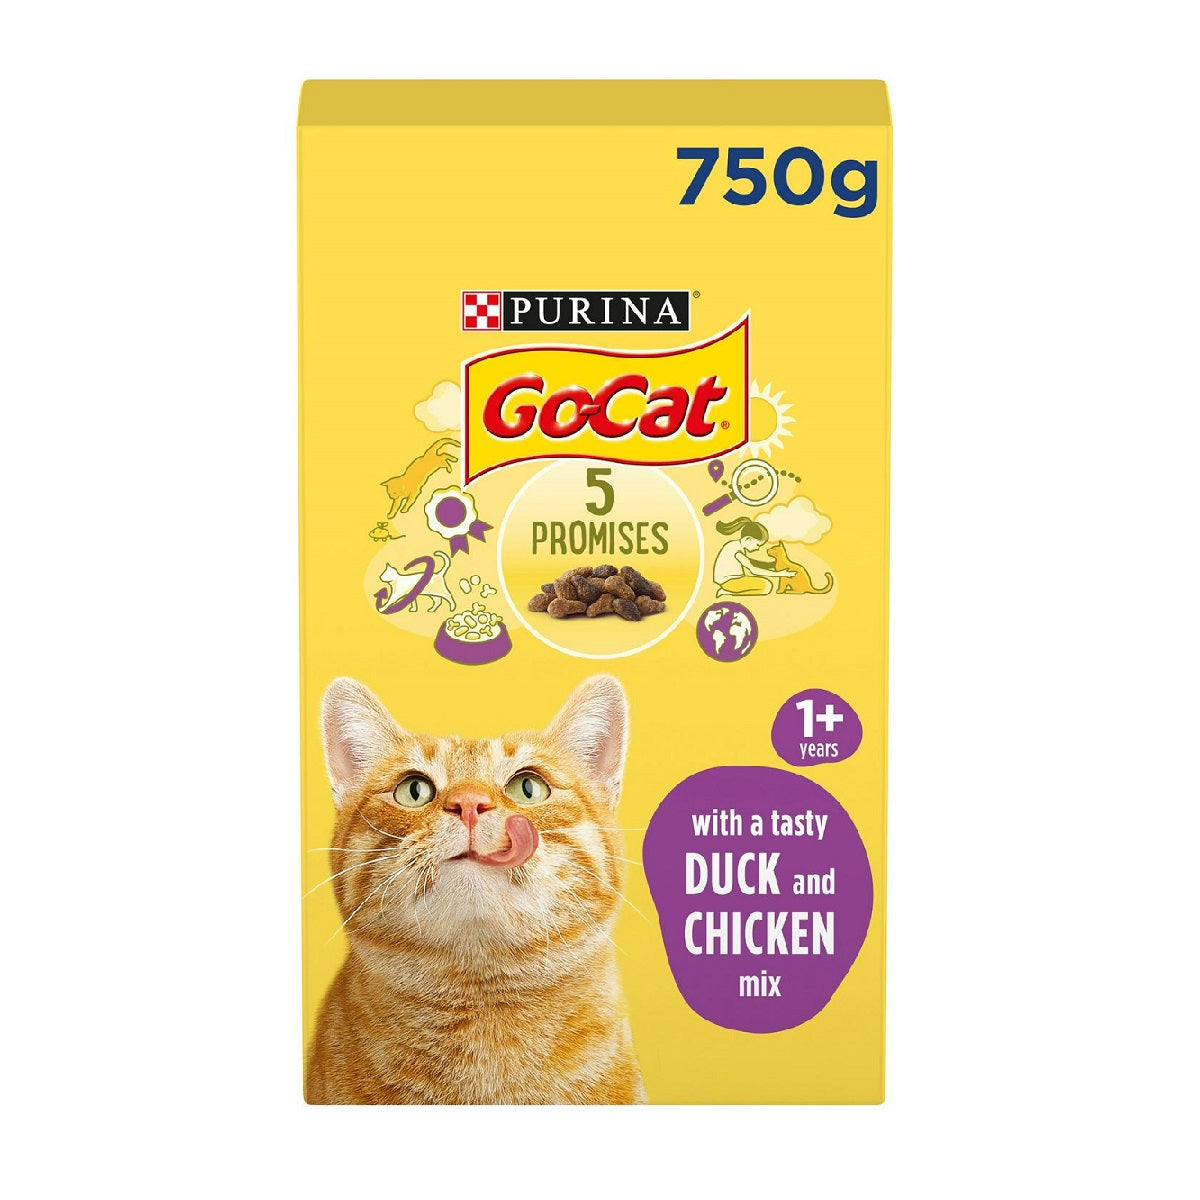 Go-Cat - Chicken & Duck Complete